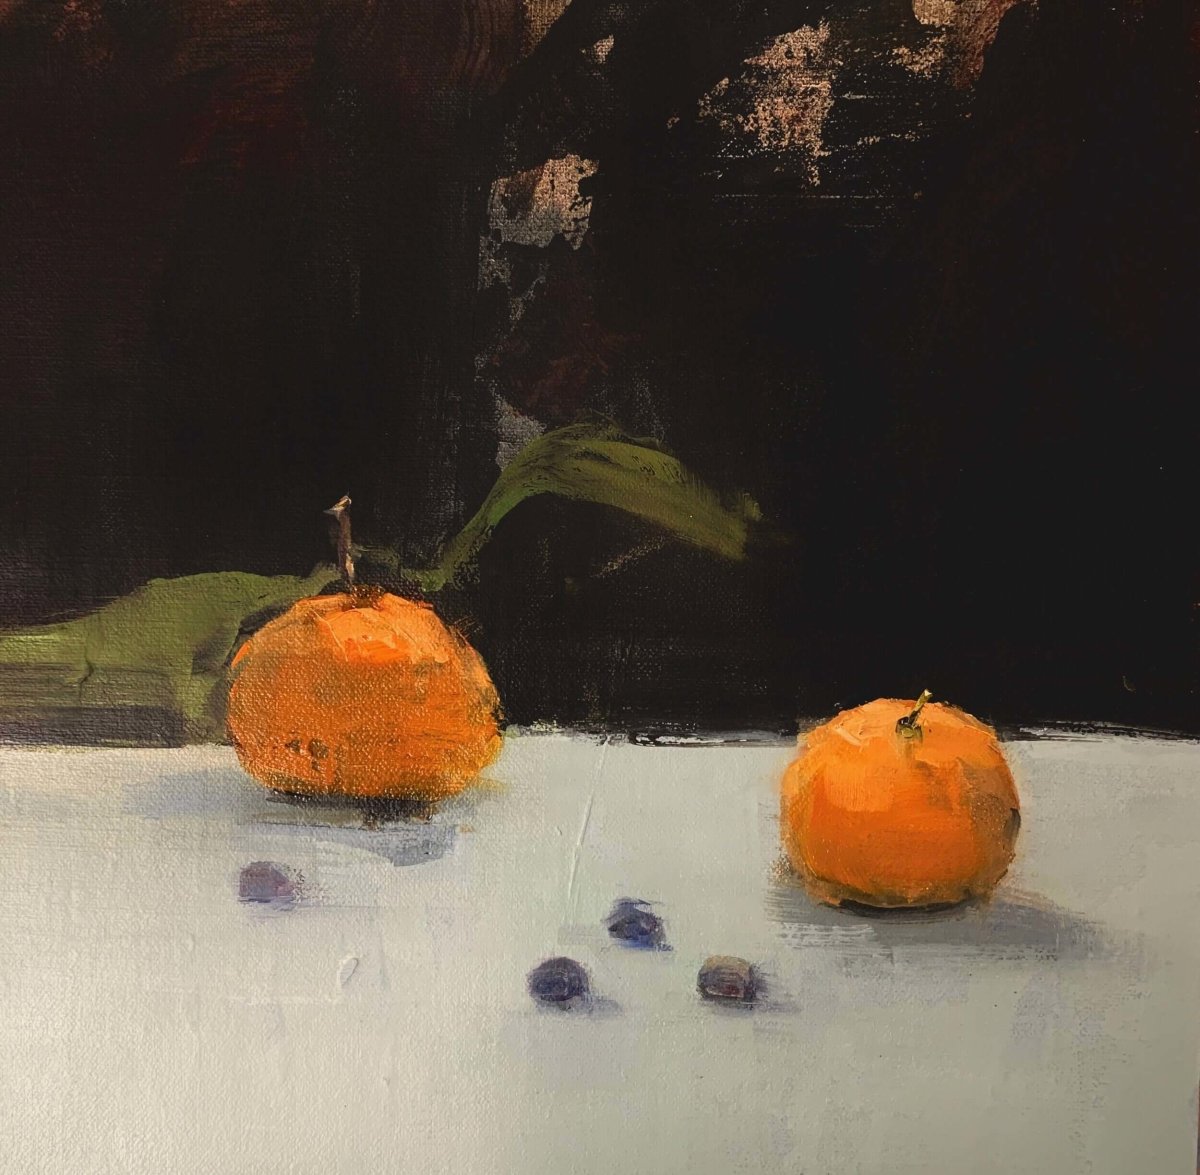 Mandarins and Blueberries II by Deborah Hill at LePrince Galleries